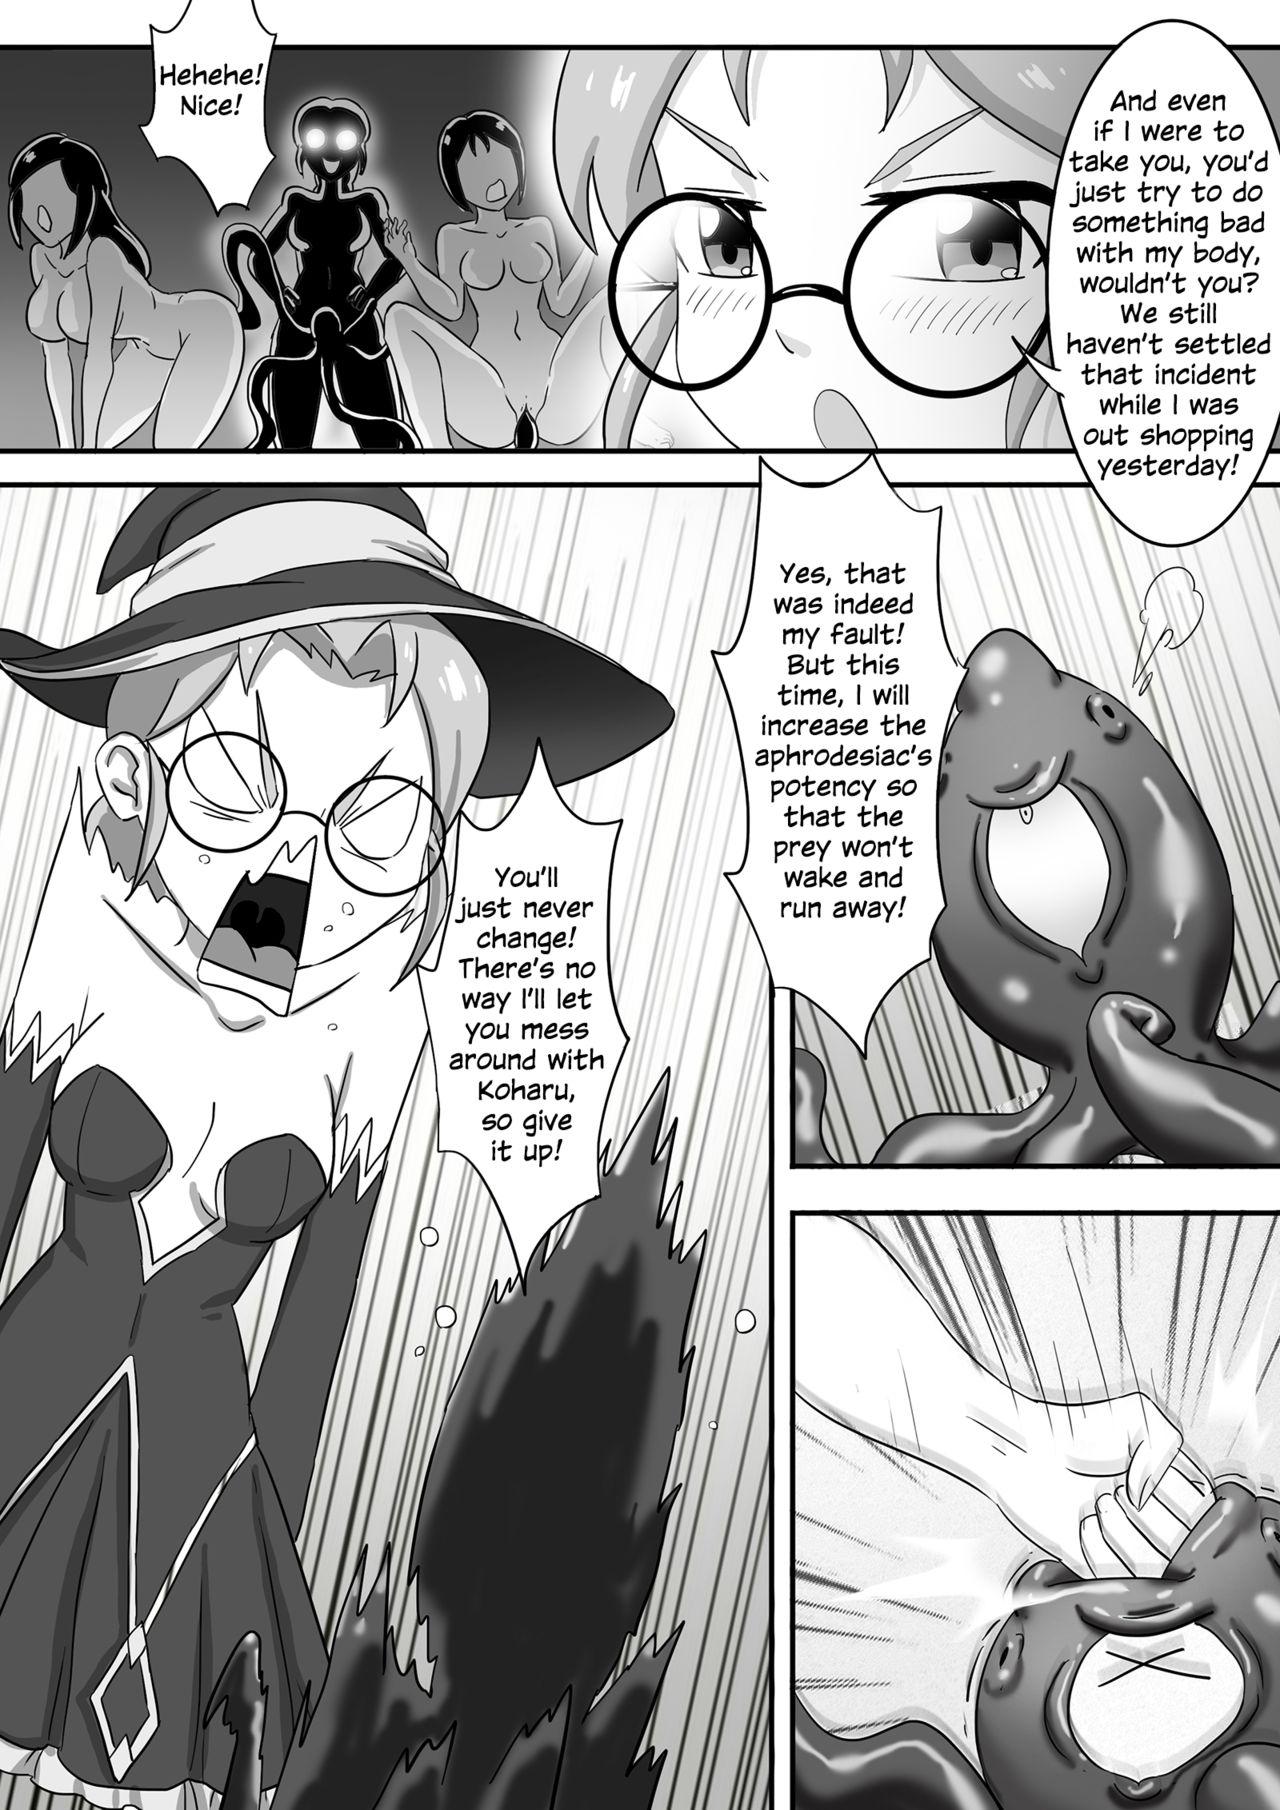 Sologirl 寄生虫系列之钻阴虫——万圣节特别篇 Goth - Page 5